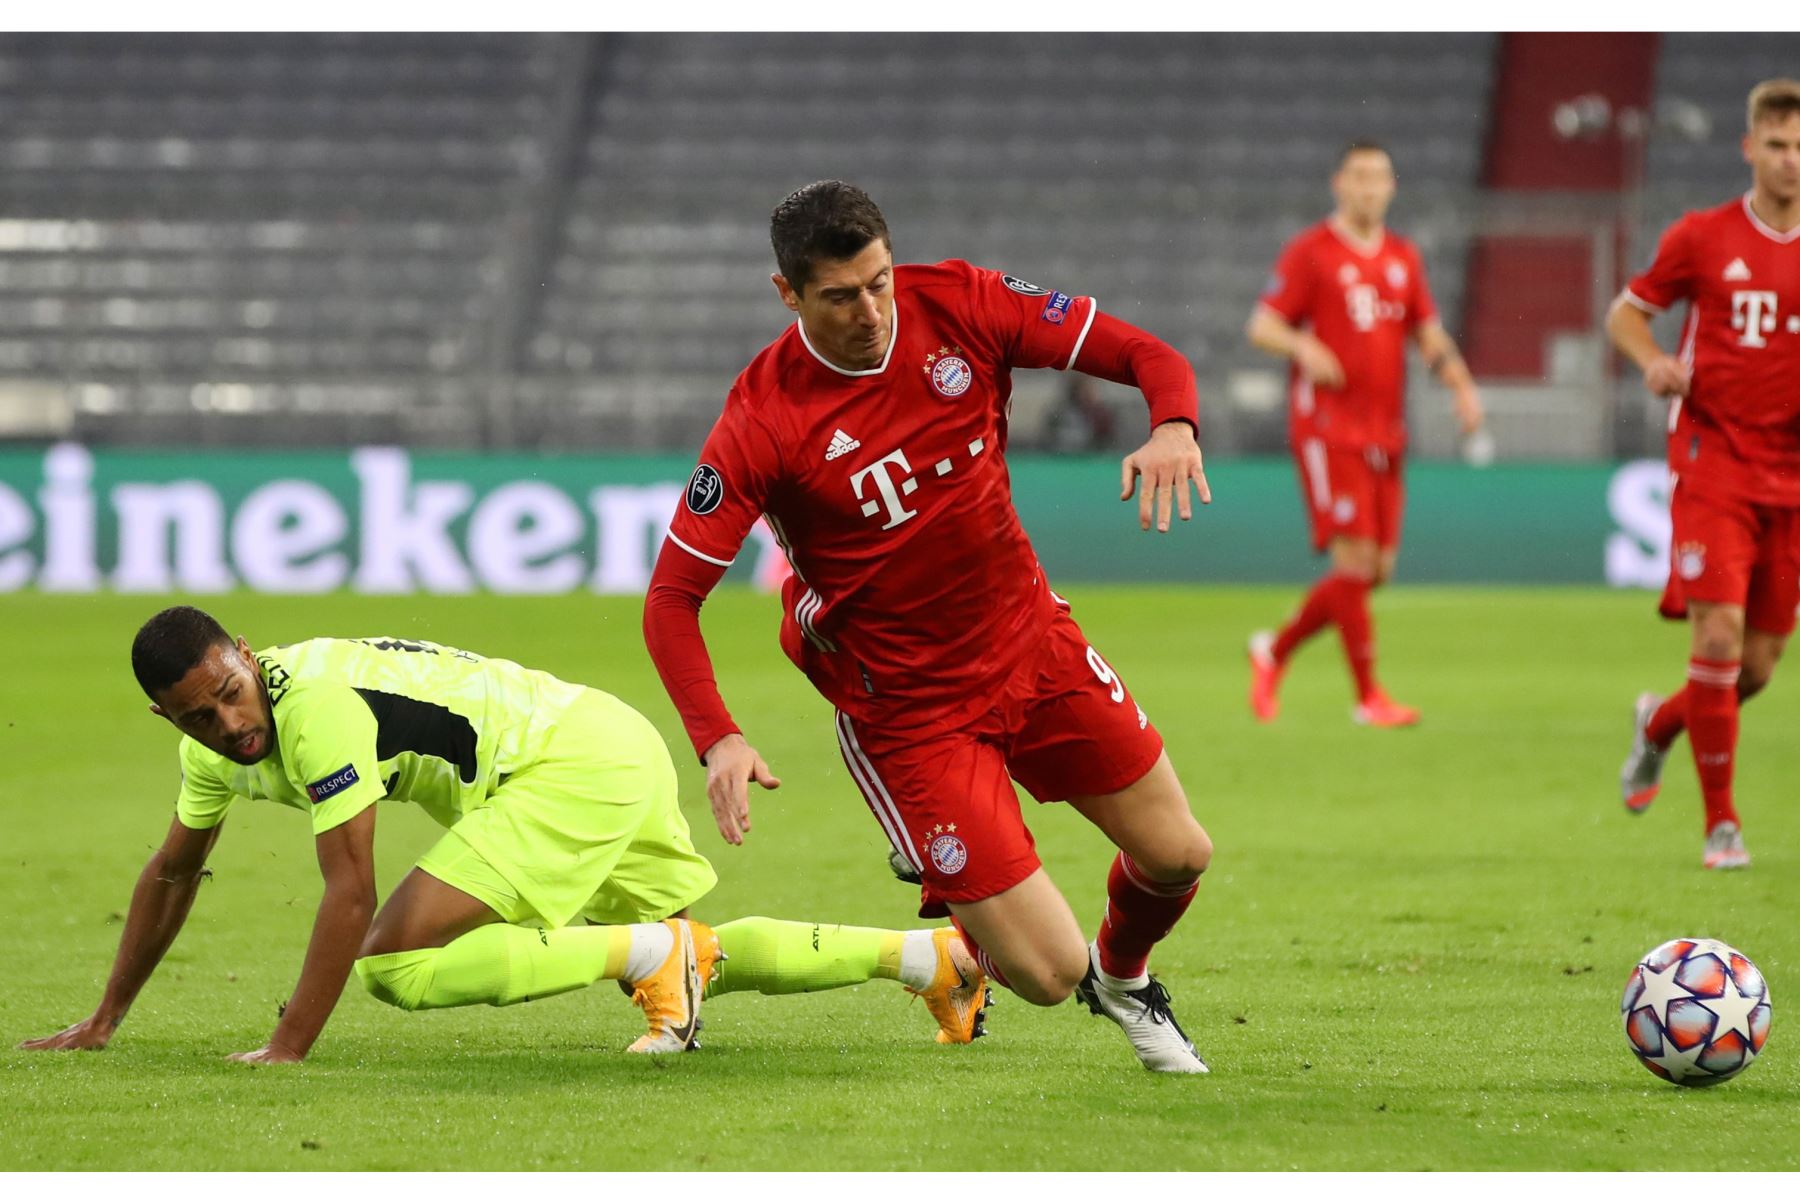 Robert Lewandowski del FC Bayern Munich es desafiado por Renan Lodi del Atlético de Madrid durante el partido de la fase del Grupo A de la Liga de Campeones de la UEFA. Foto: EFE